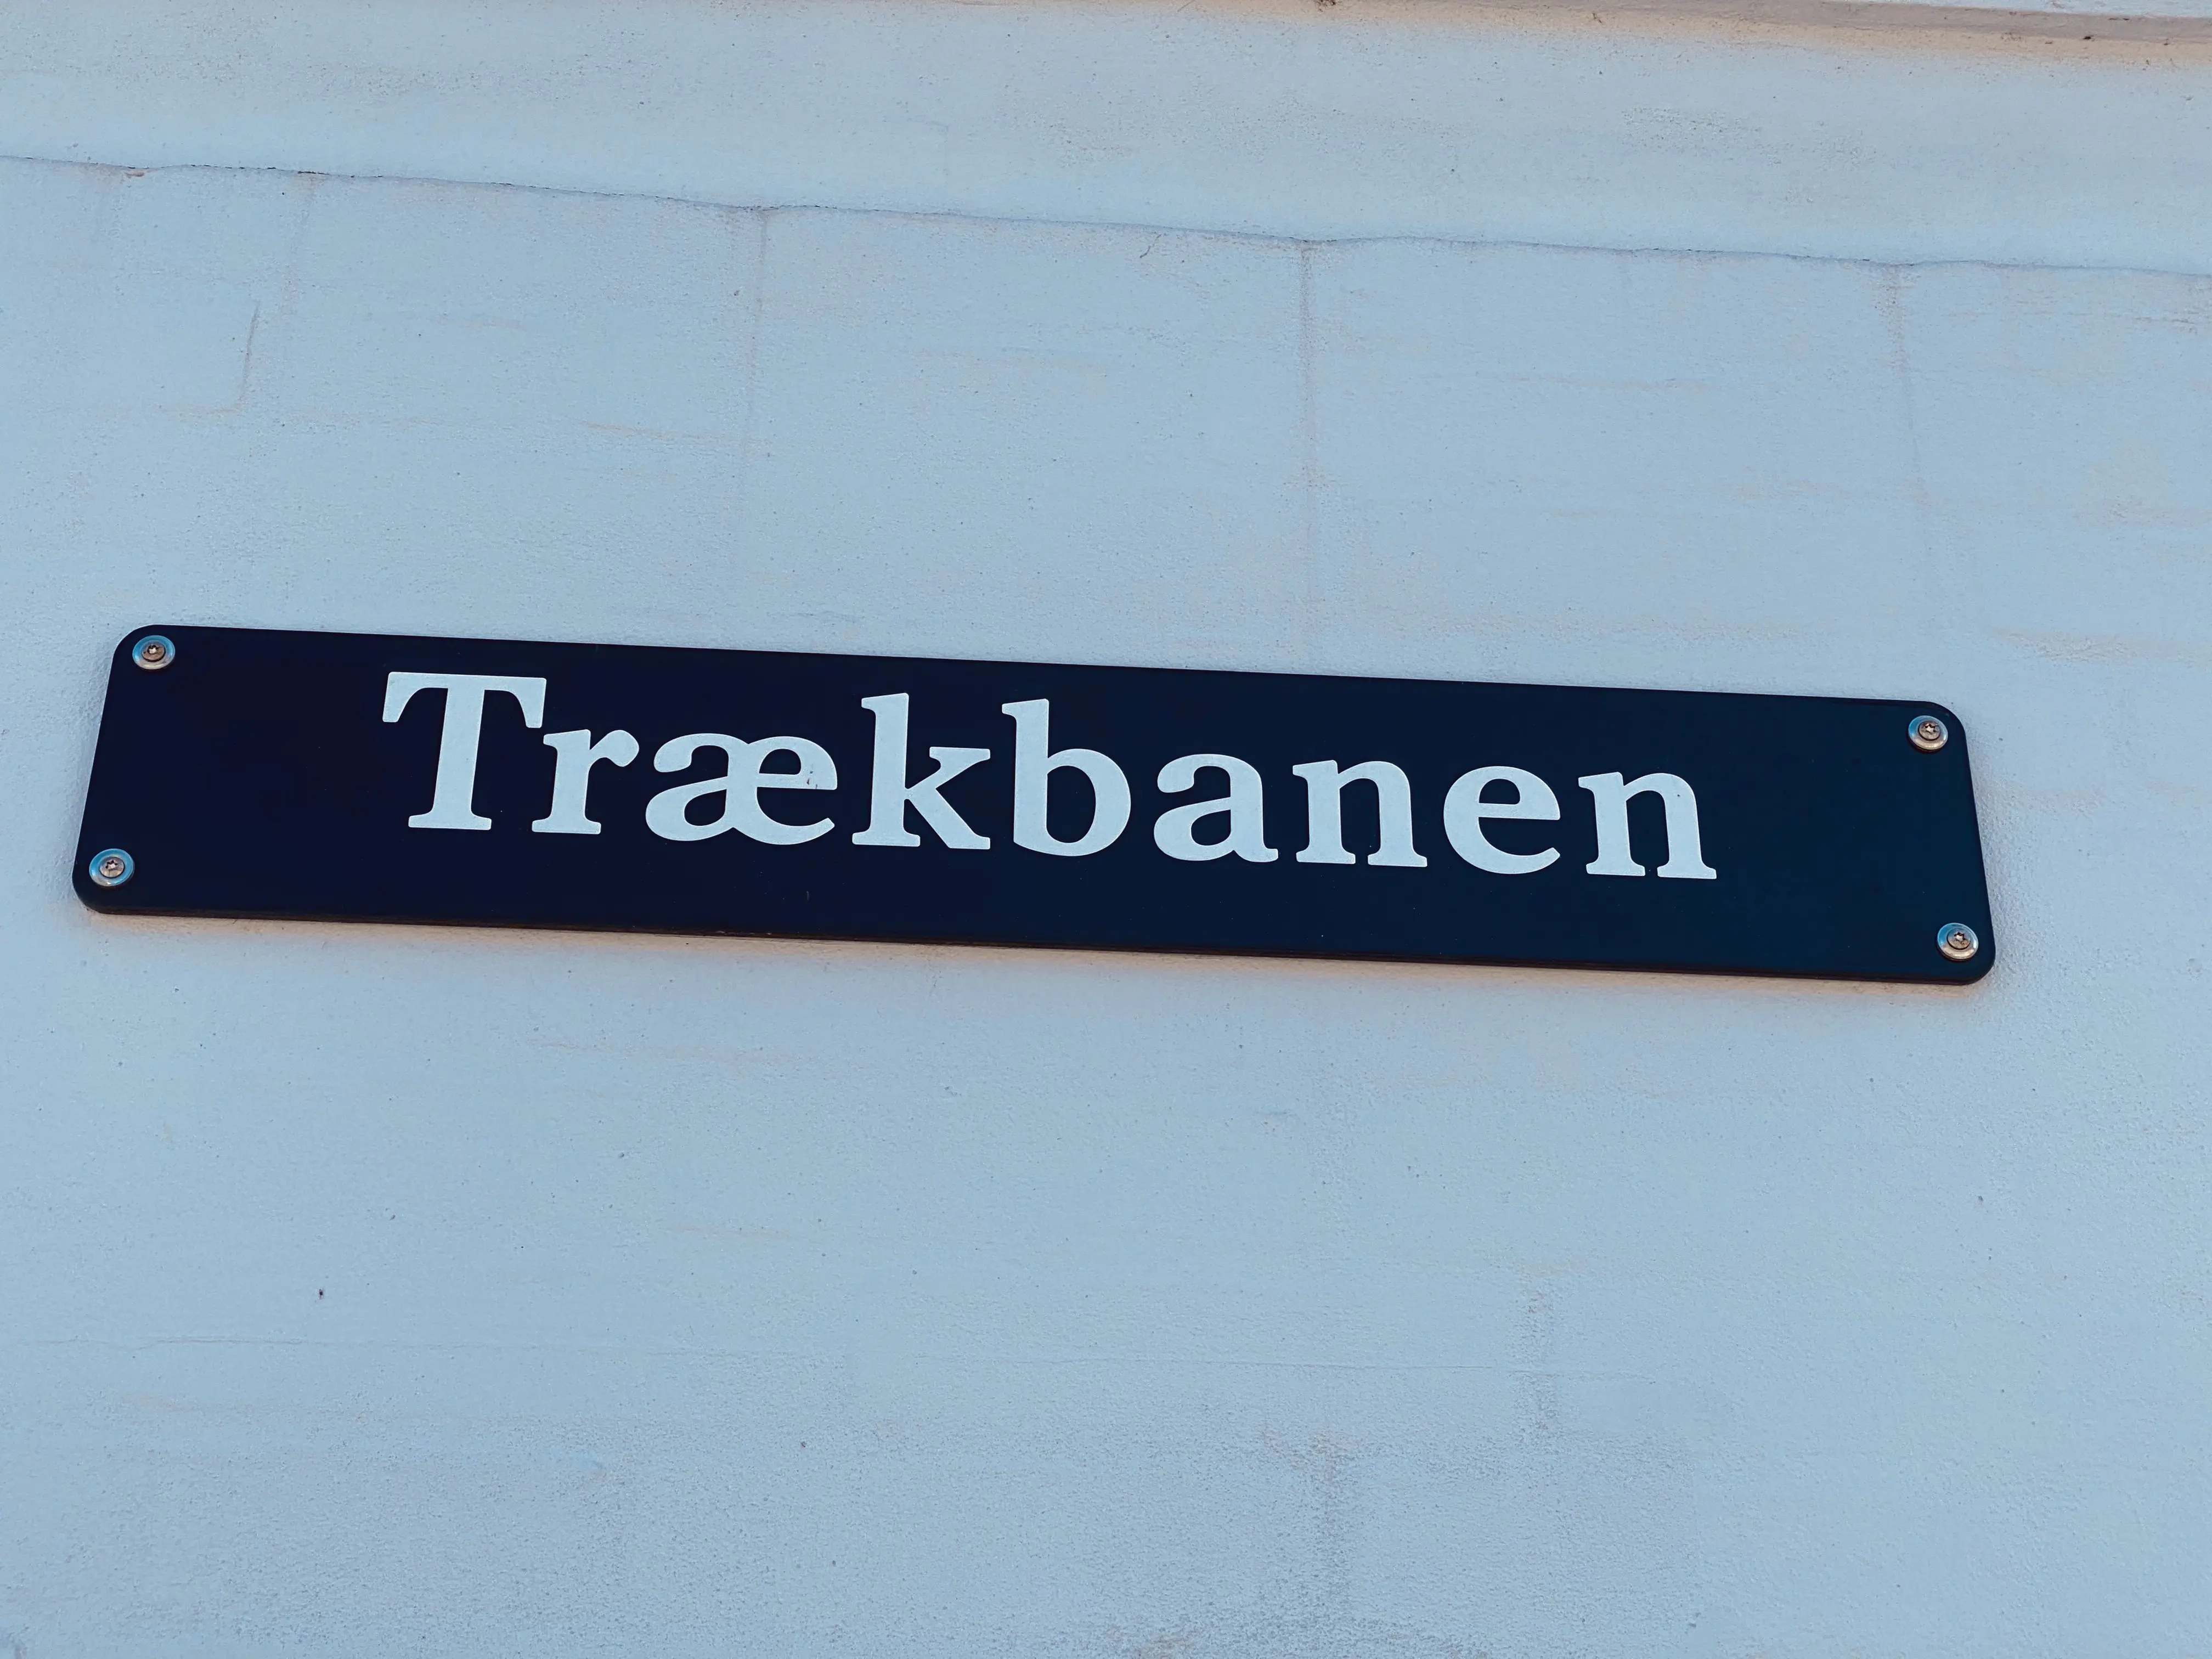 Helsingør (1864-1891) Station lå på vejen Trækbanen, da der fra stationen løb en hestetrukken skinnebane ned til havnen og værftet.